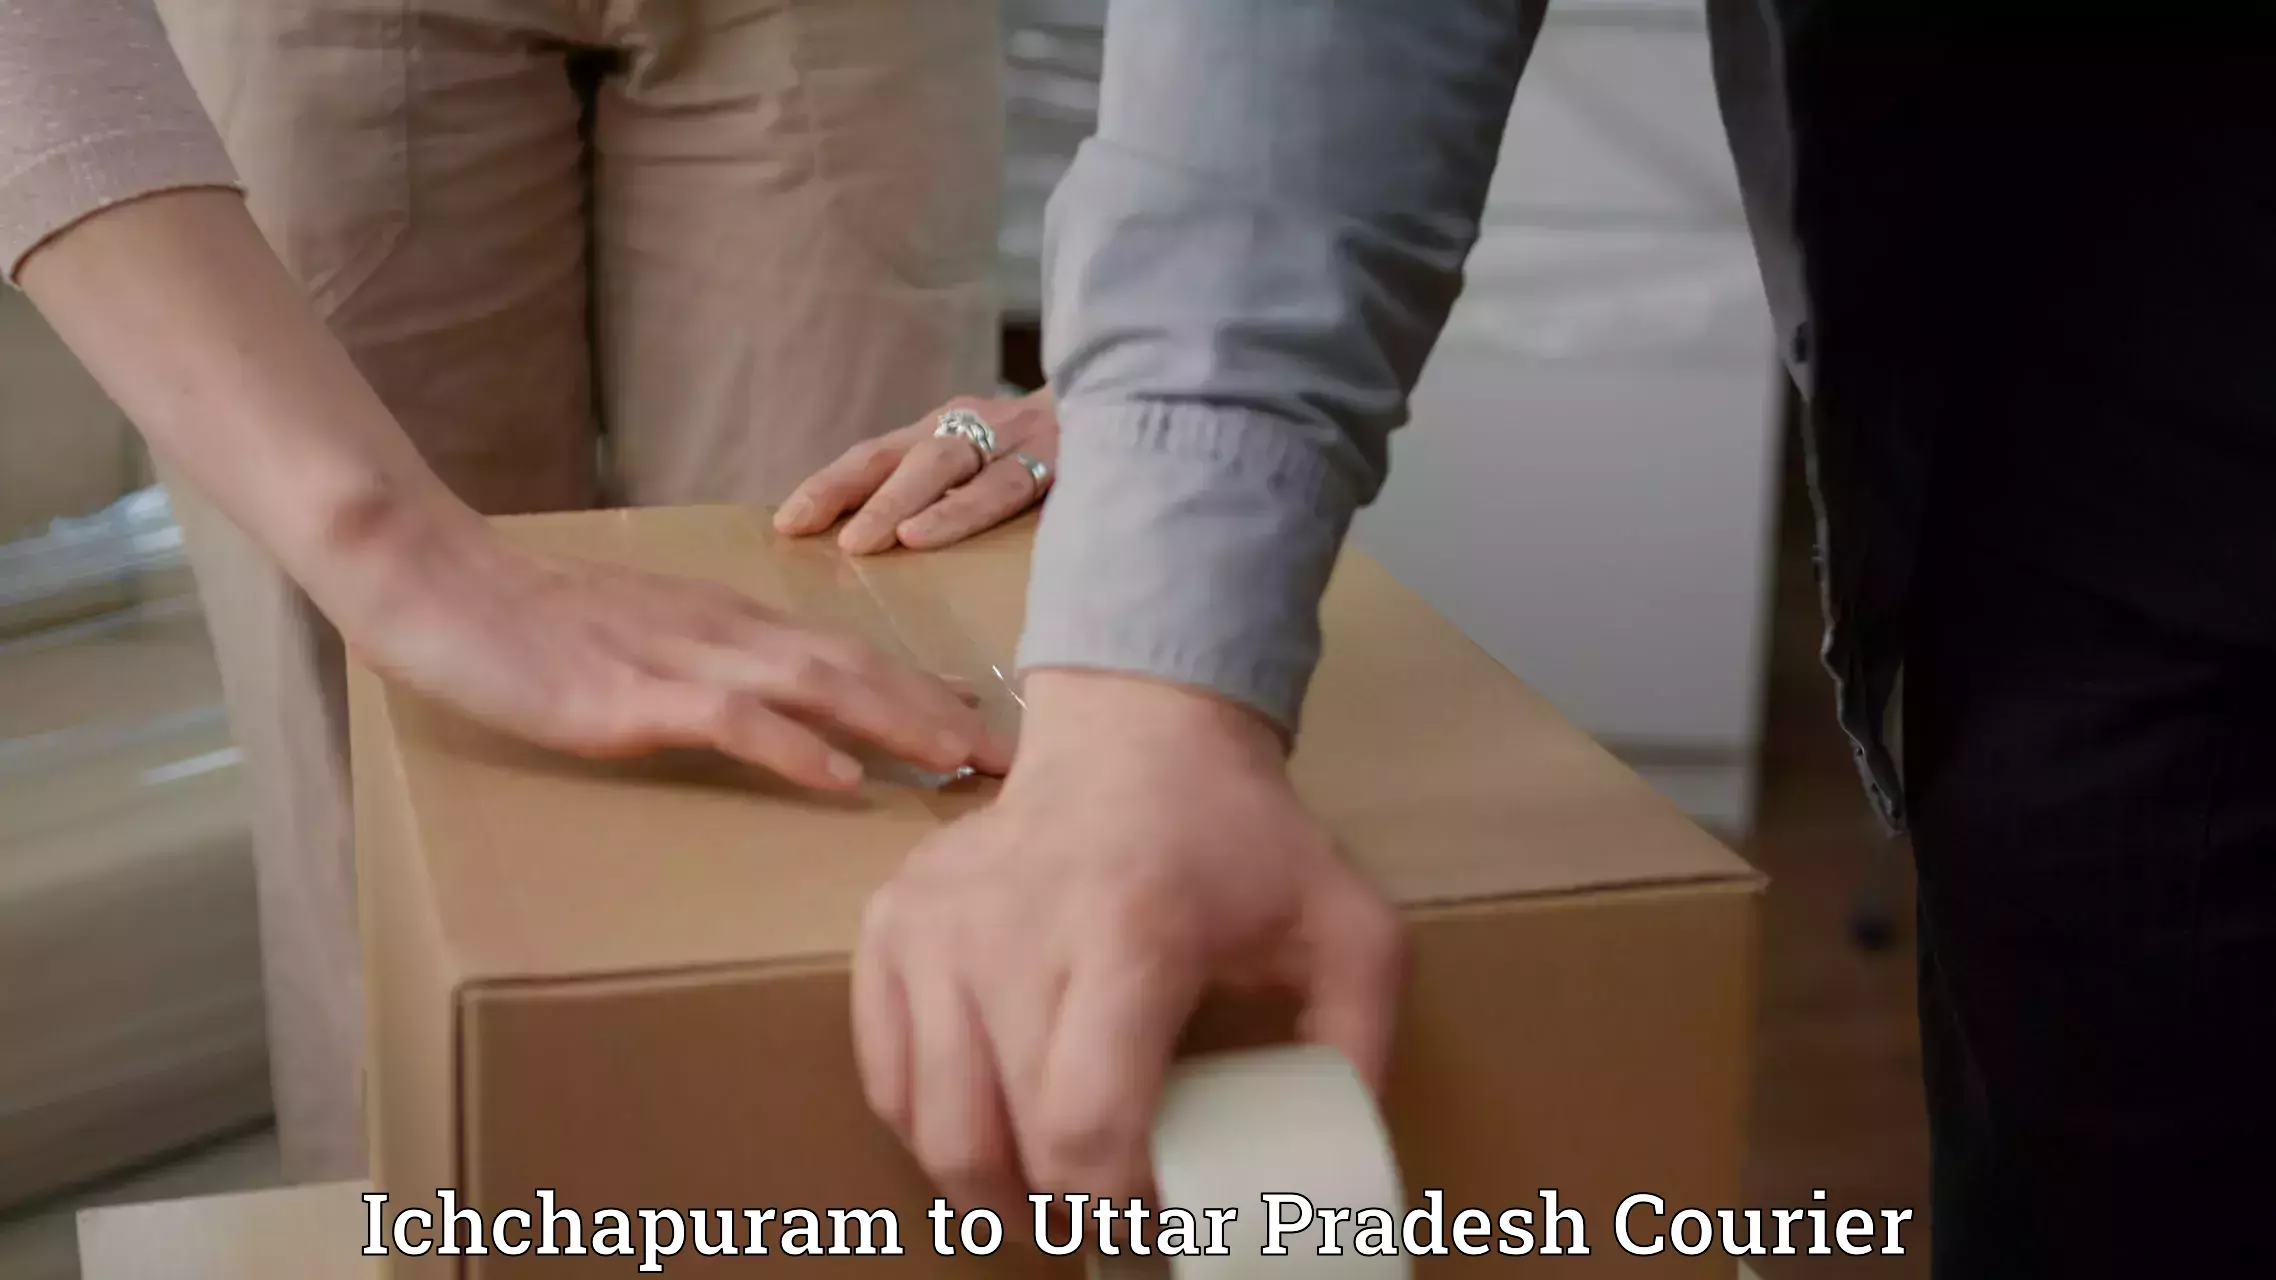 24-hour courier service Ichchapuram to Kairana